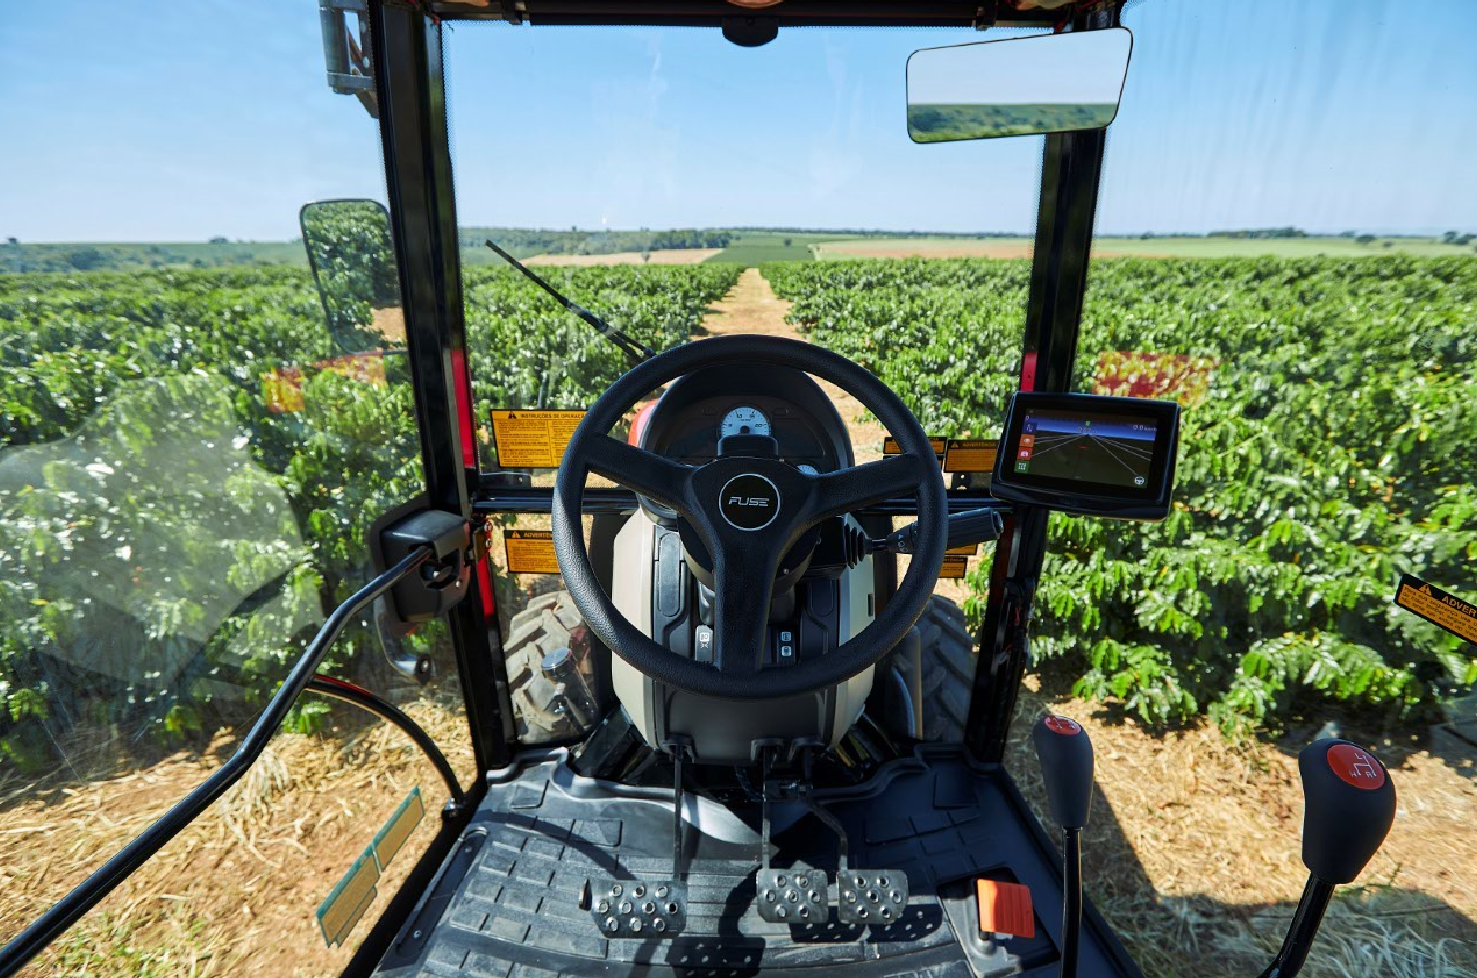 Tecnologia para automação da produção agrícola está disponível para máquinas novas e usadas; soluções permitem otimizar as operações e minimizar custos